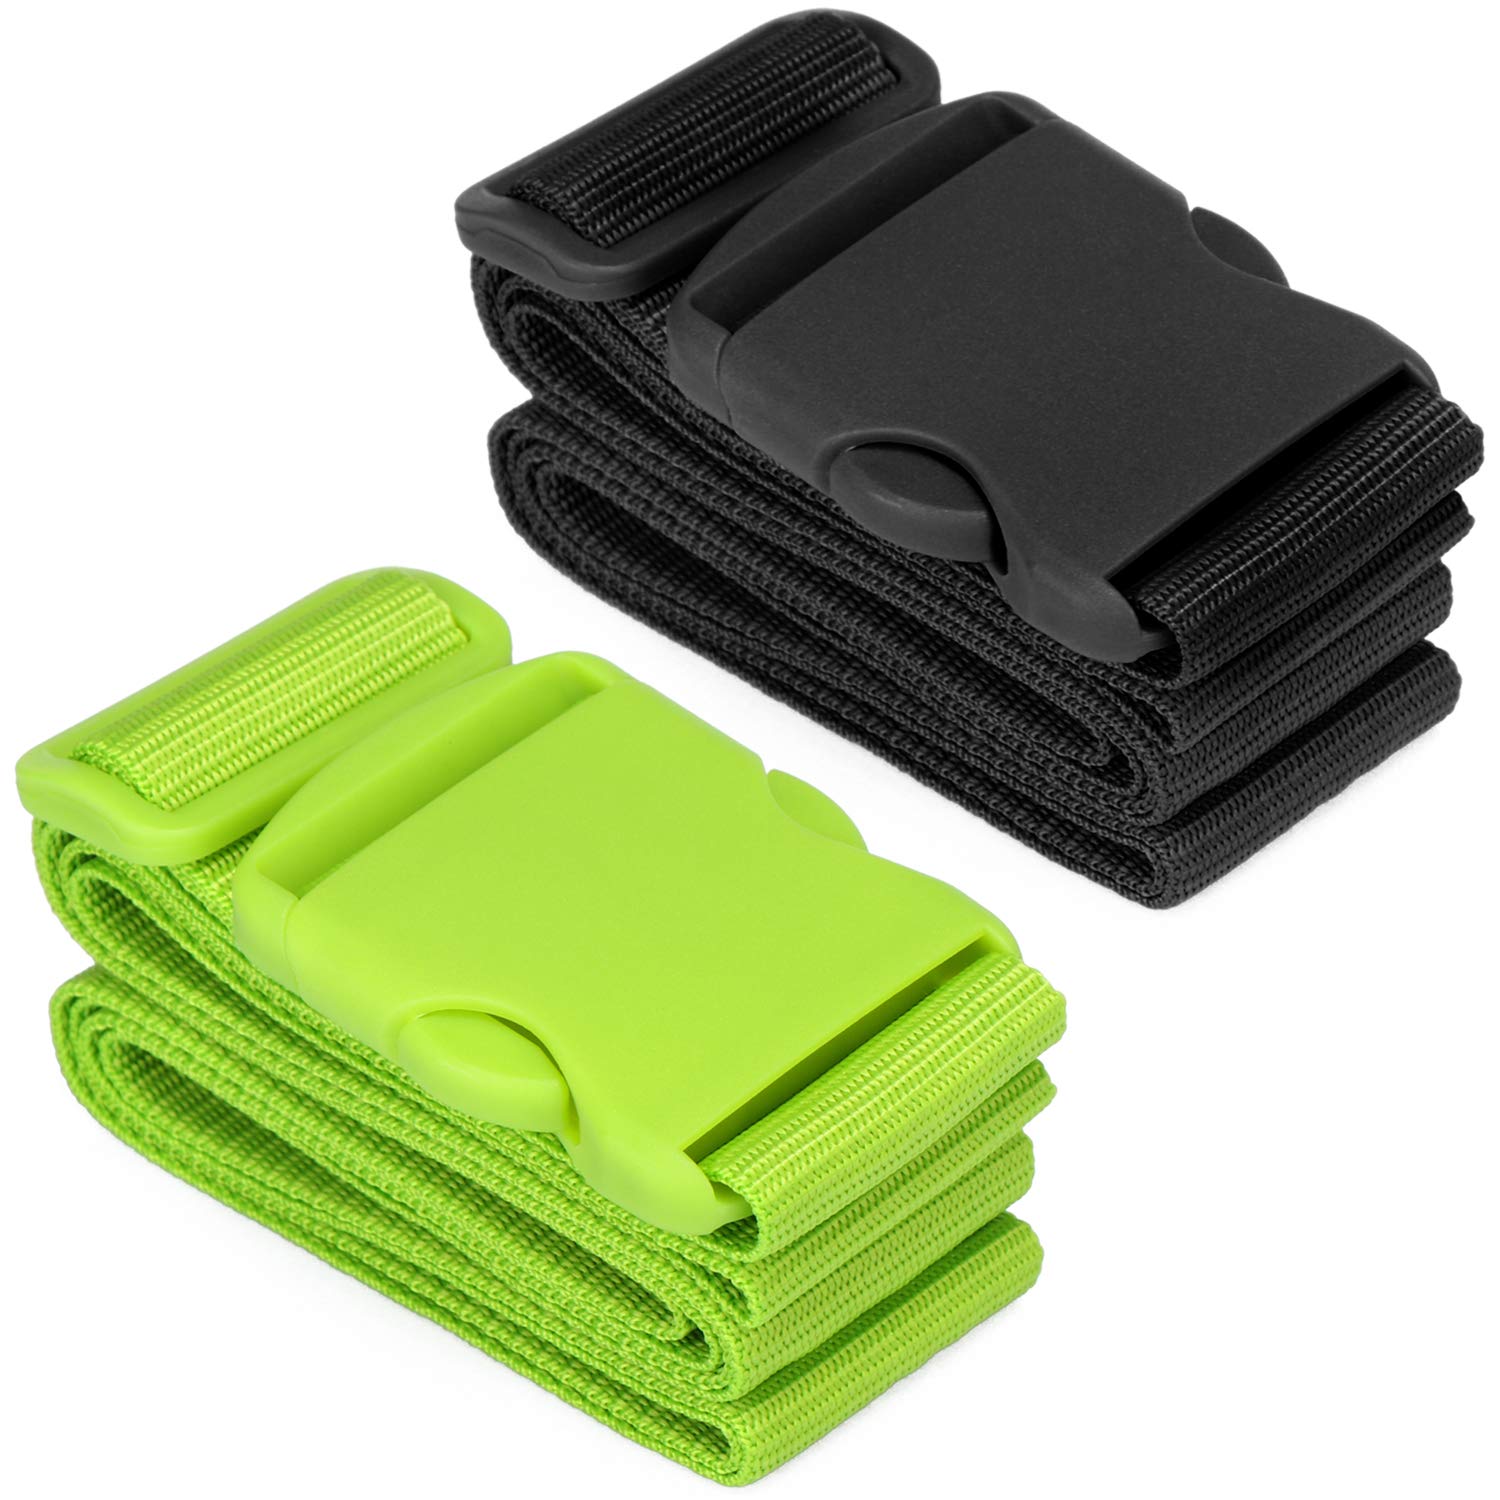 com-four® 2X Koffergurt mit robustem Verschluss - Hochwertiges Kofferband in 2 Farben - Gepäckband für Reise und Urlaub (02 Stück - grün/schwarz) von com-four